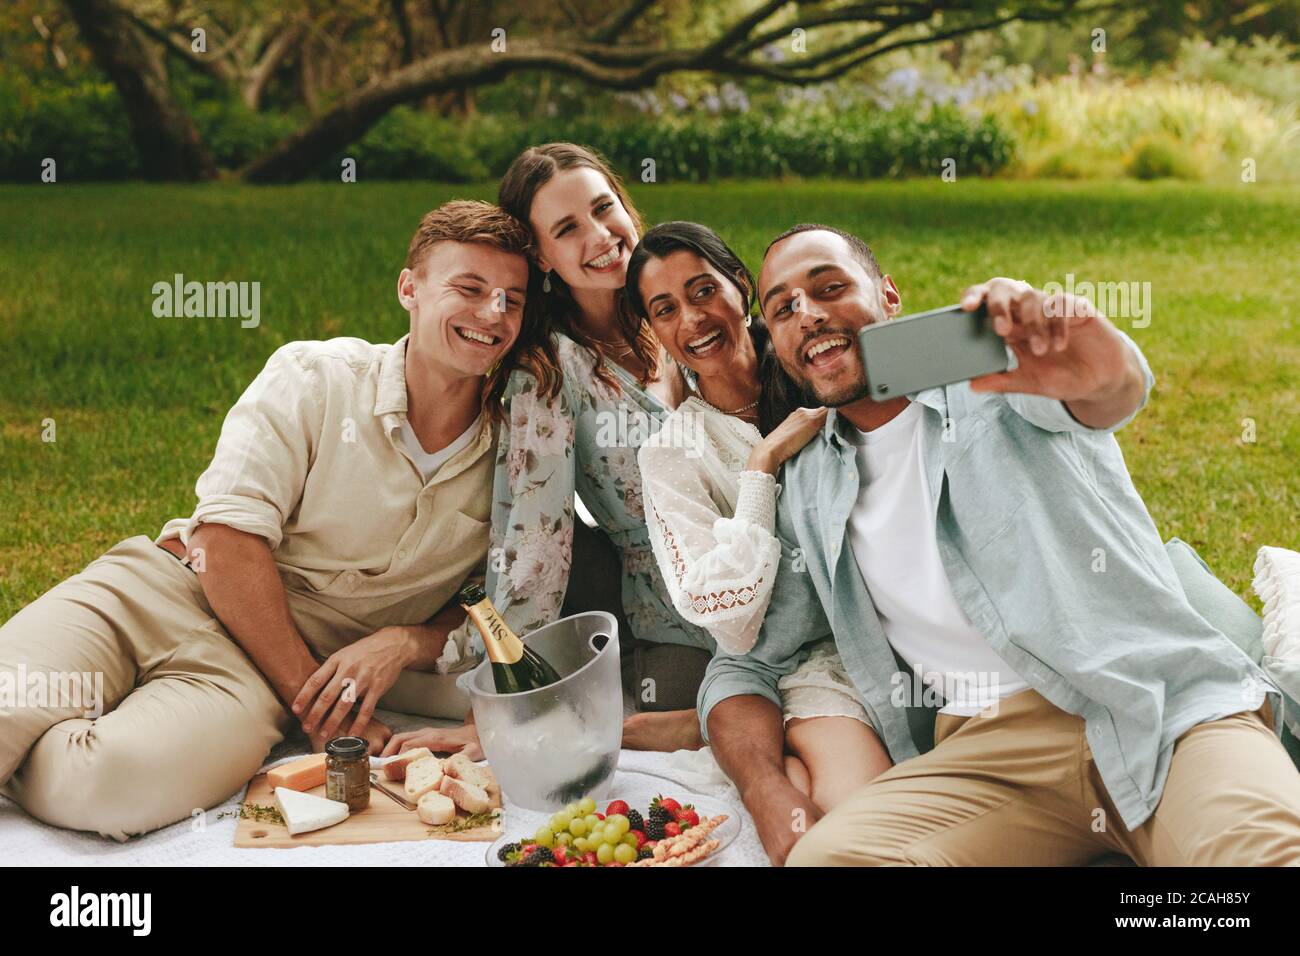 Junger Mann, der beim Picknick Selfie mit Freunden nimmt. Multiethnische Gruppe junger Männer und Frauen, die für ein Selfie im Park posieren. Stockfoto